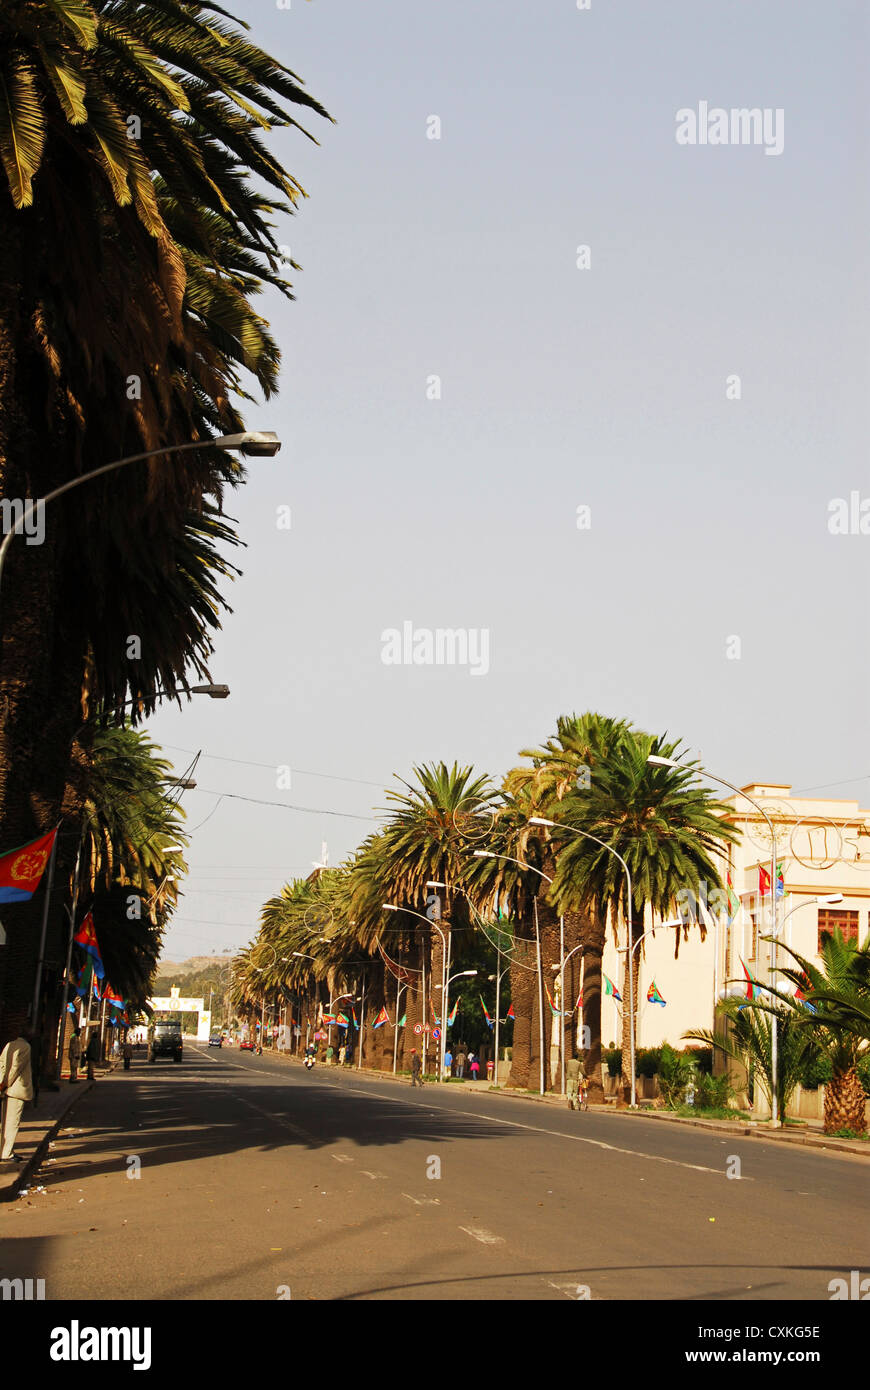 Eritrea, Asmara, trees lined on an empty street Stock Photo